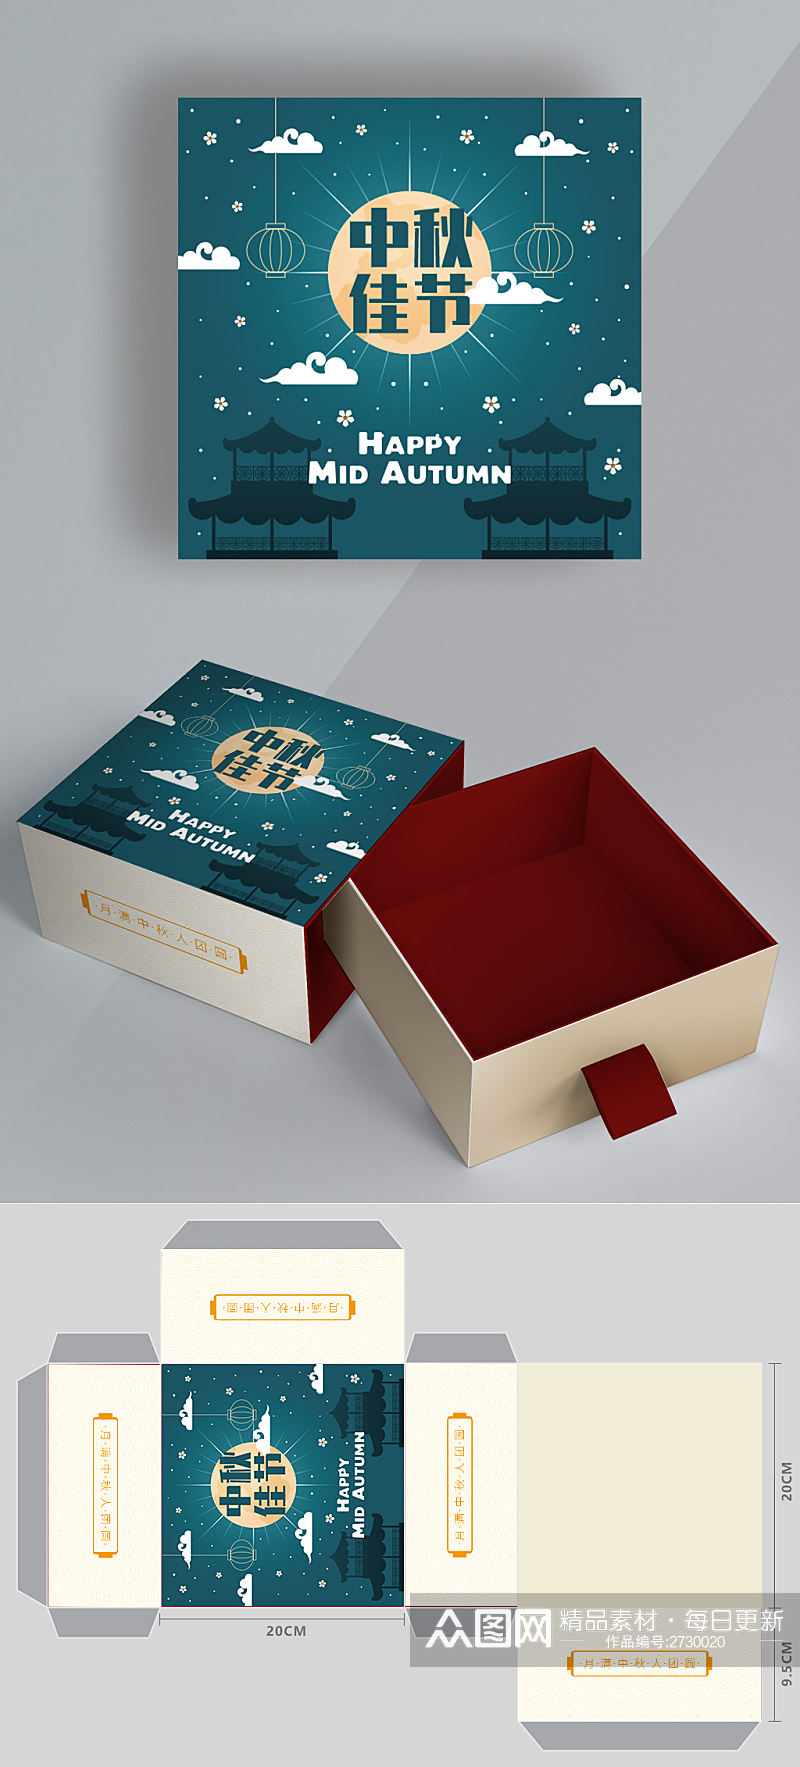 中秋节矢量圆月插画月饼礼盒包装设计素材